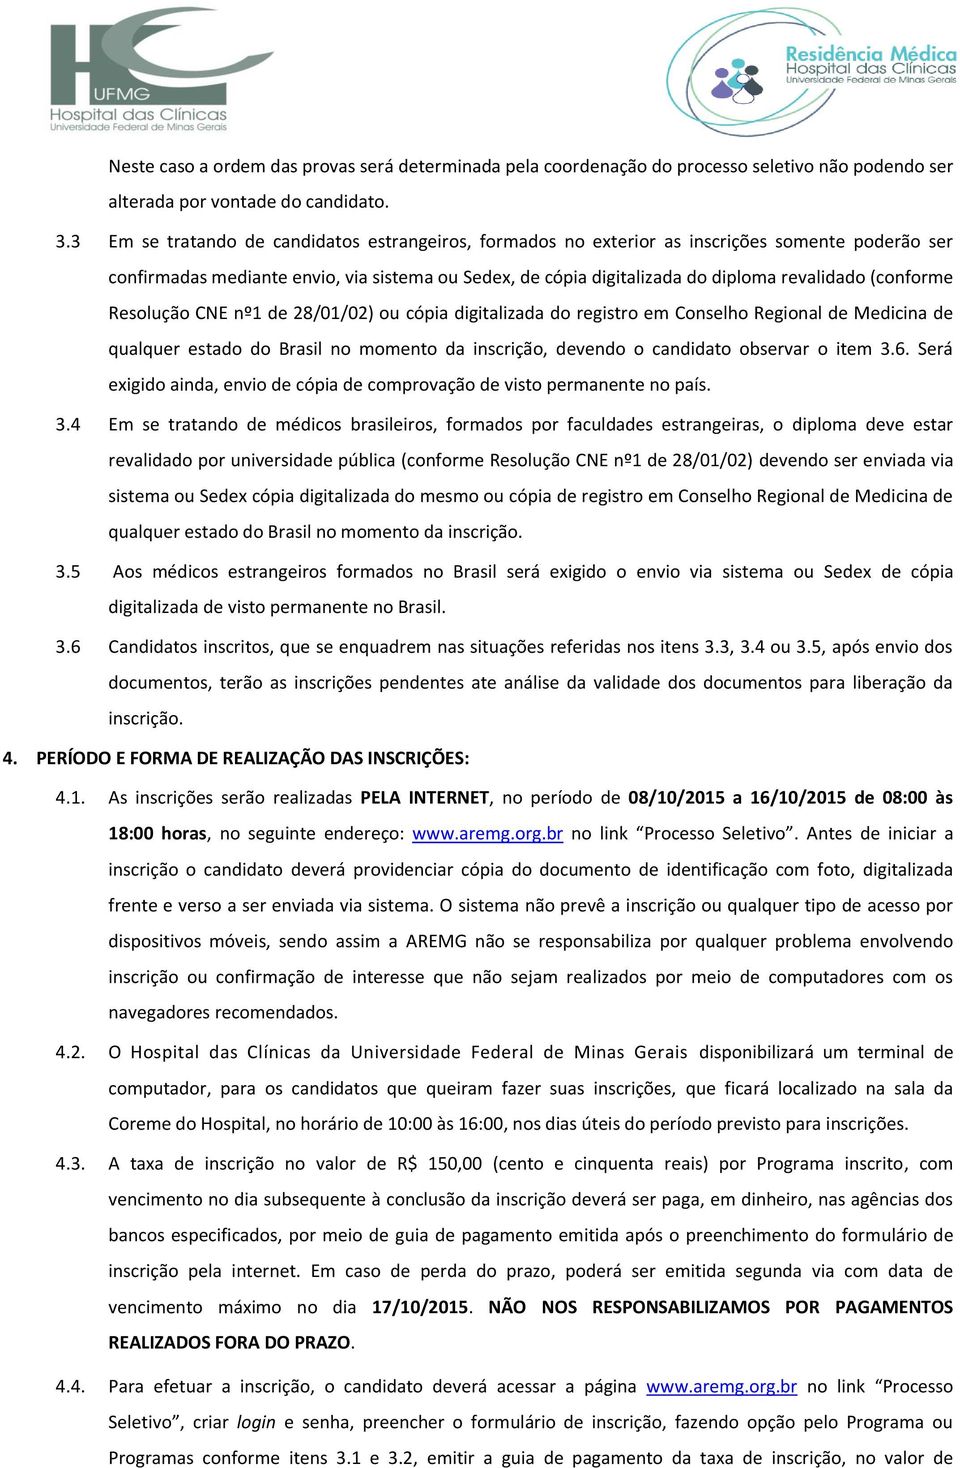 (conforme Resolução CNE nº1 de 28/01/02) ou cópia digitalizada do registro em Conselho Regional de Medicina de qualquer estado do Brasil no momento da inscrição, devendo o candidato observar o item 3.